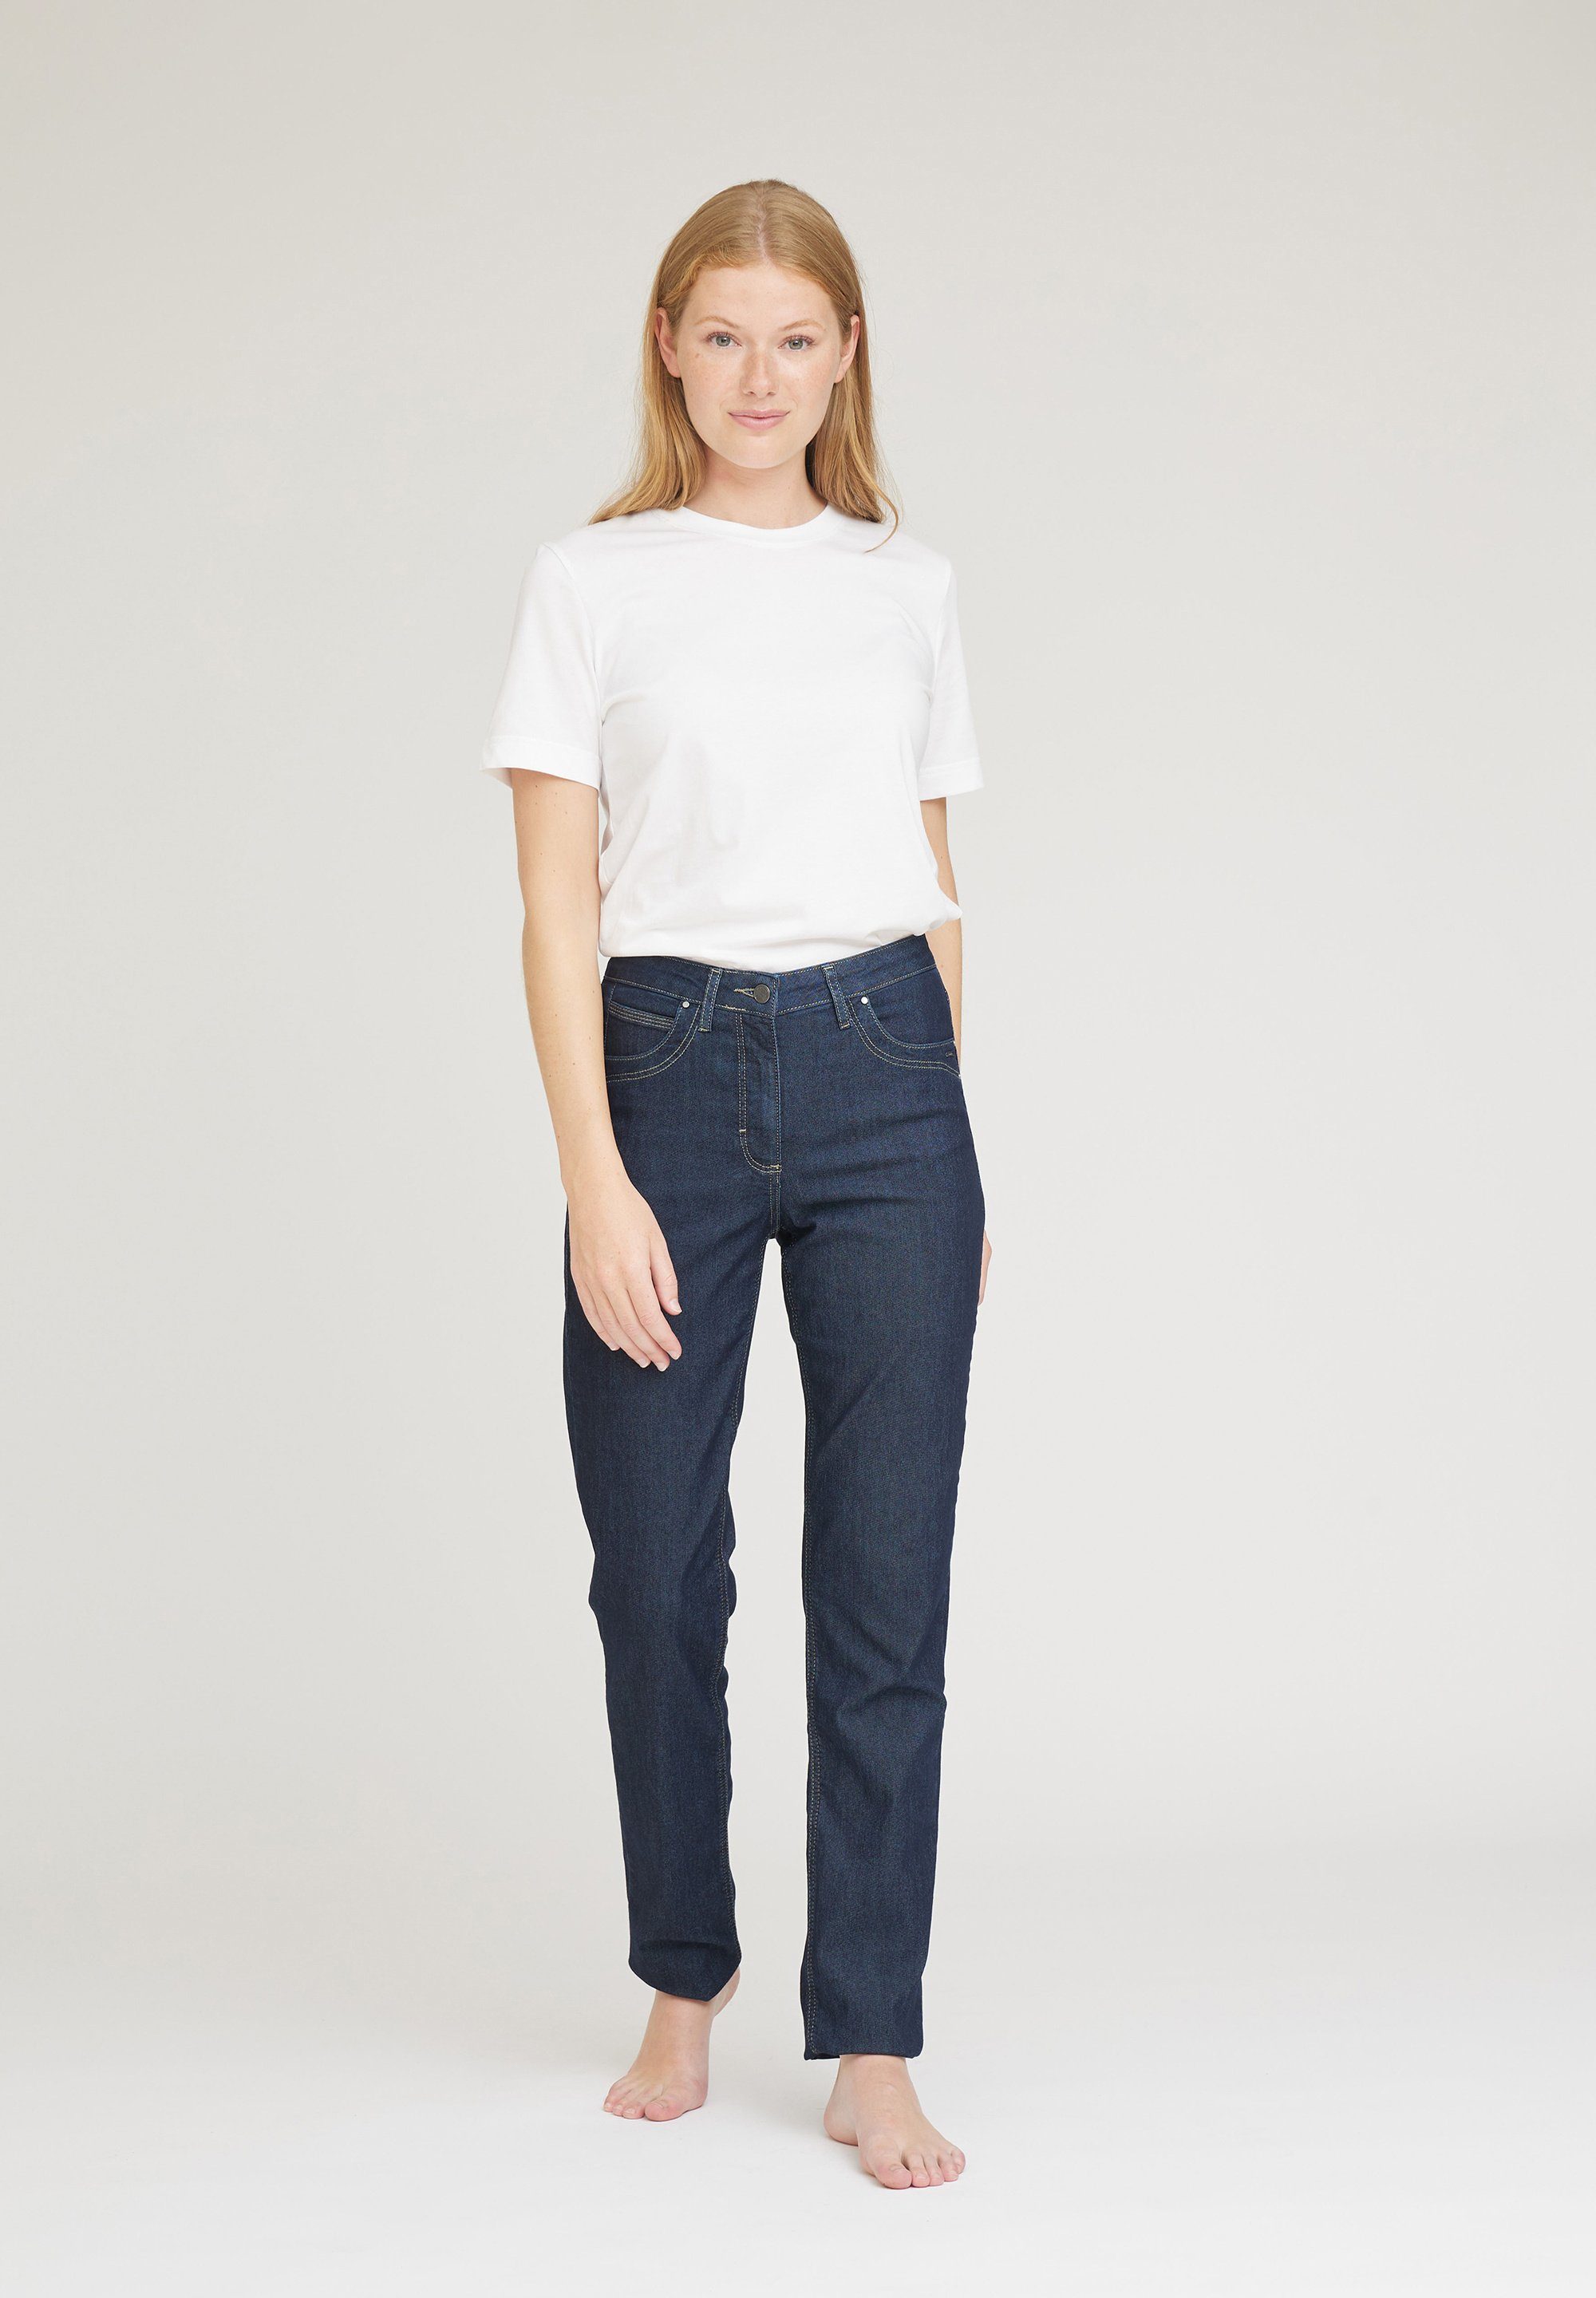 Damen Jeans LauRie Loose-fit-Jeans Charlotte Regular Denim, 5-Pocket Jeans